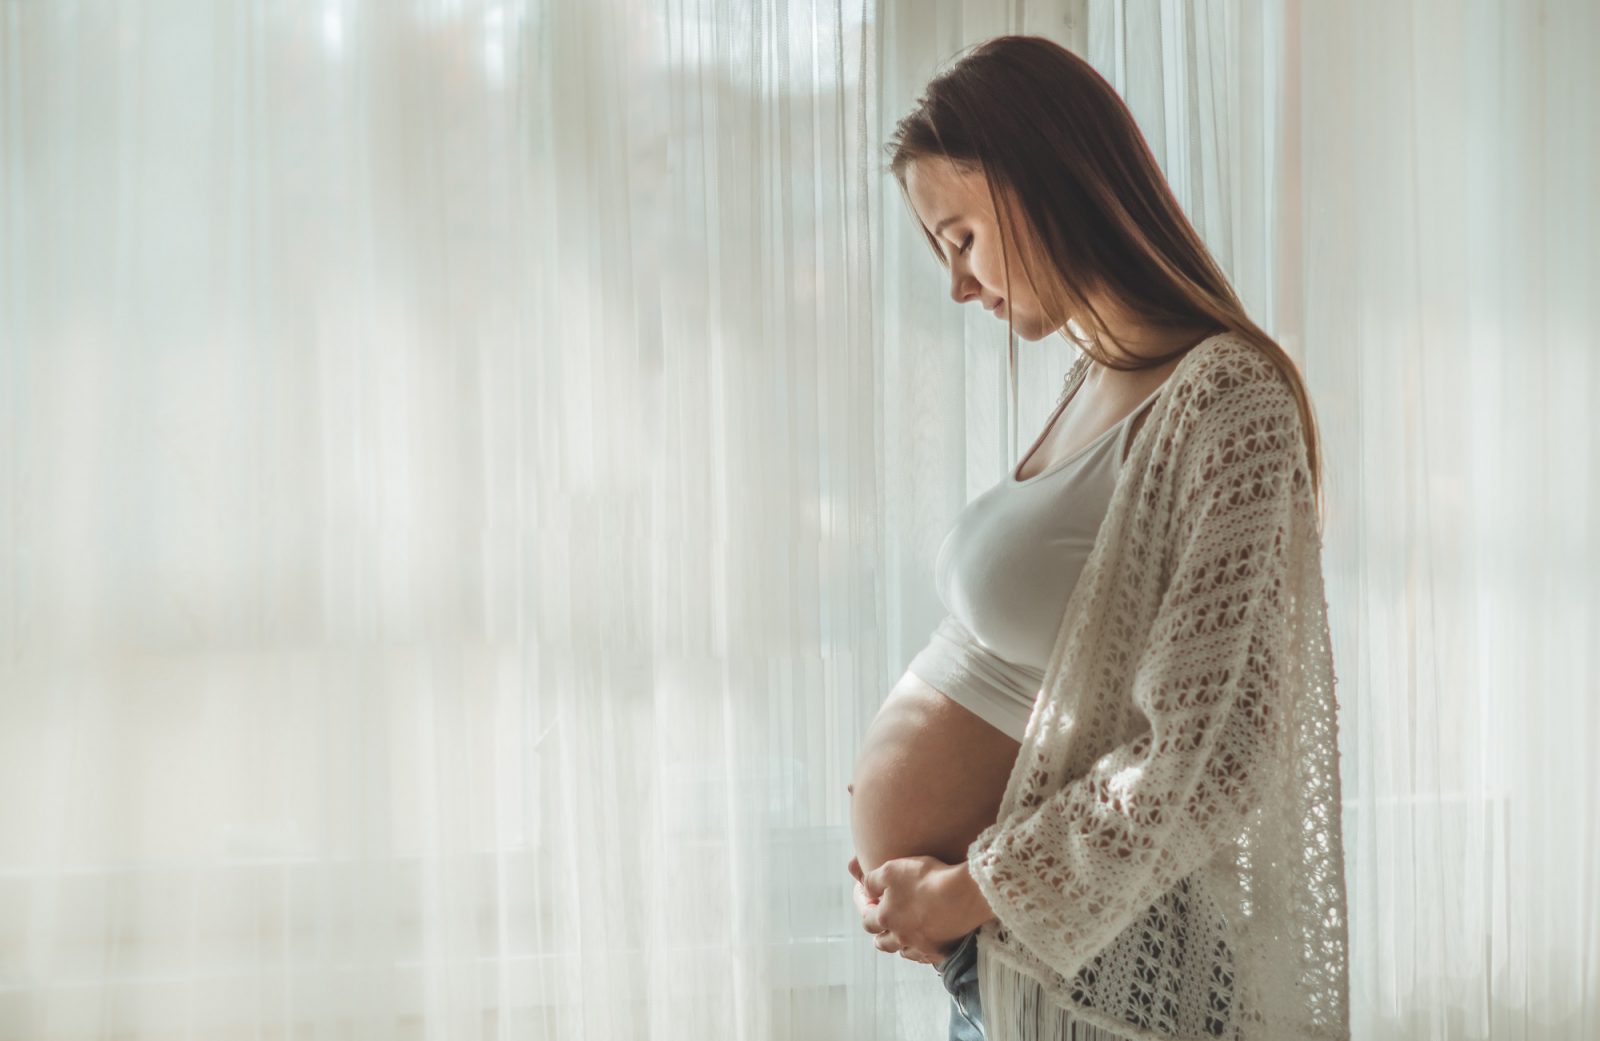 Plan porodu, wyprawka dla maluszka… co jeszcze warto przygotować, spodziewając się dziecka?